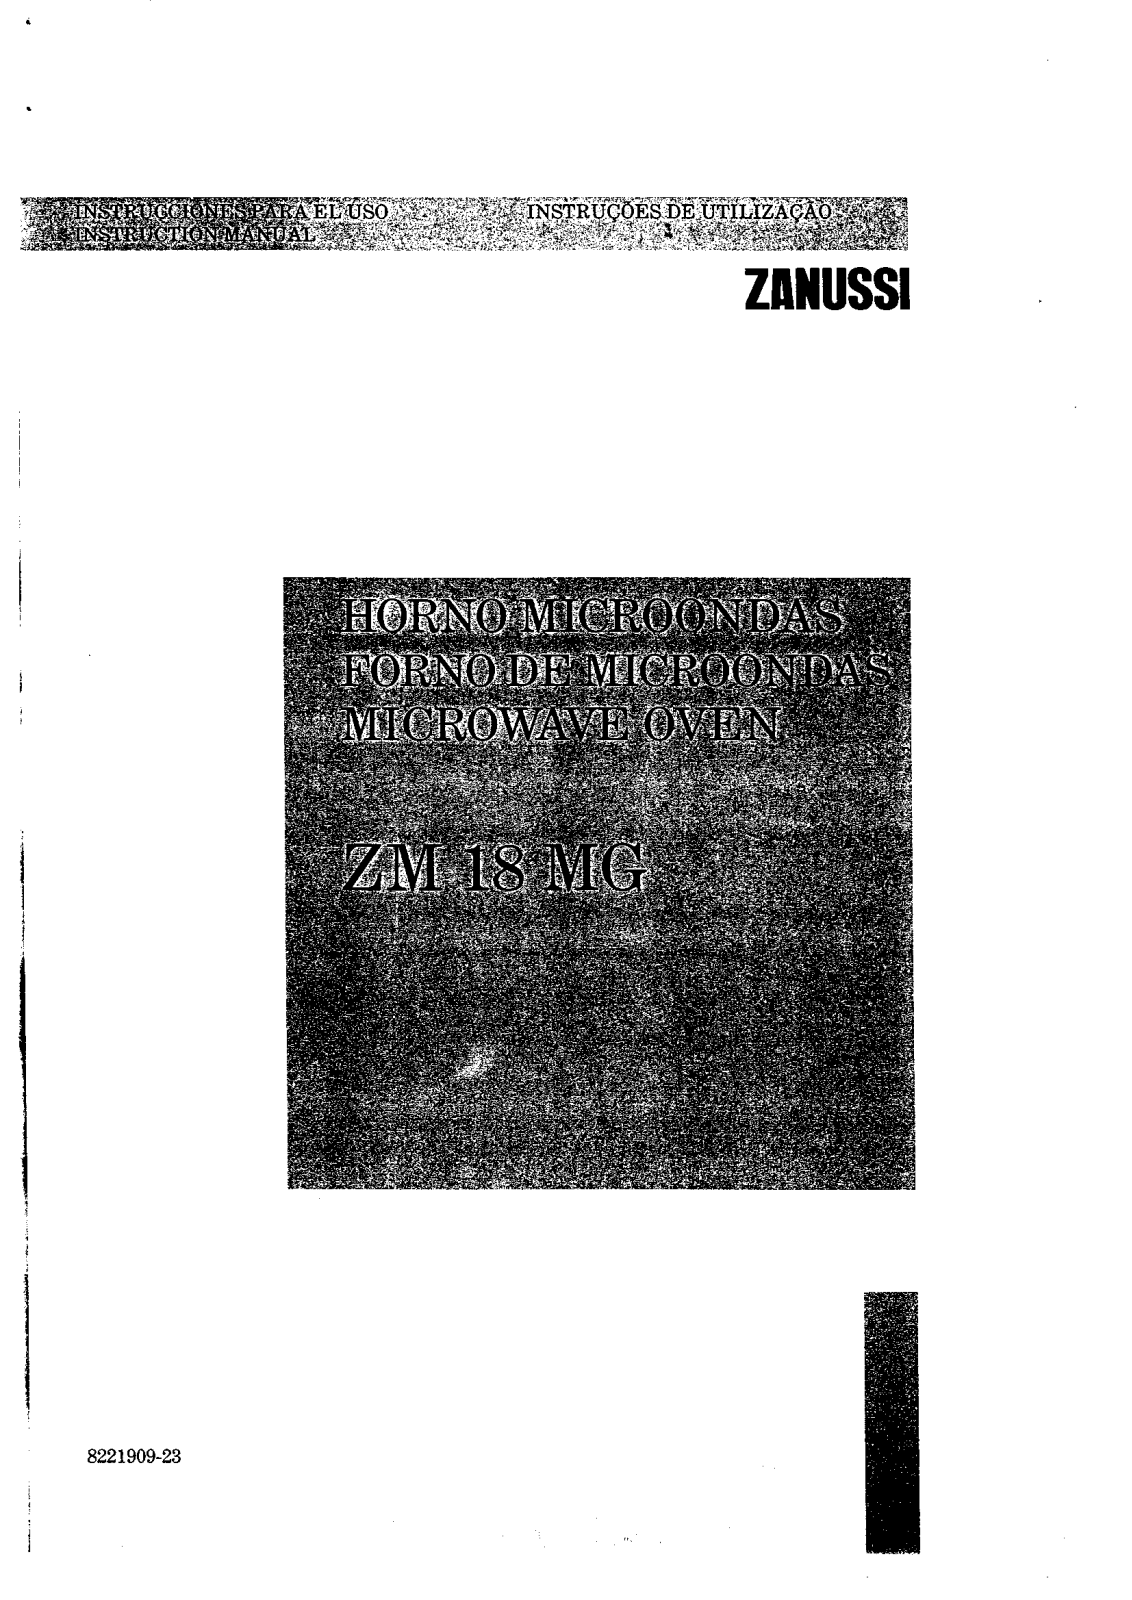 Zanussi ZM18MG User Manual